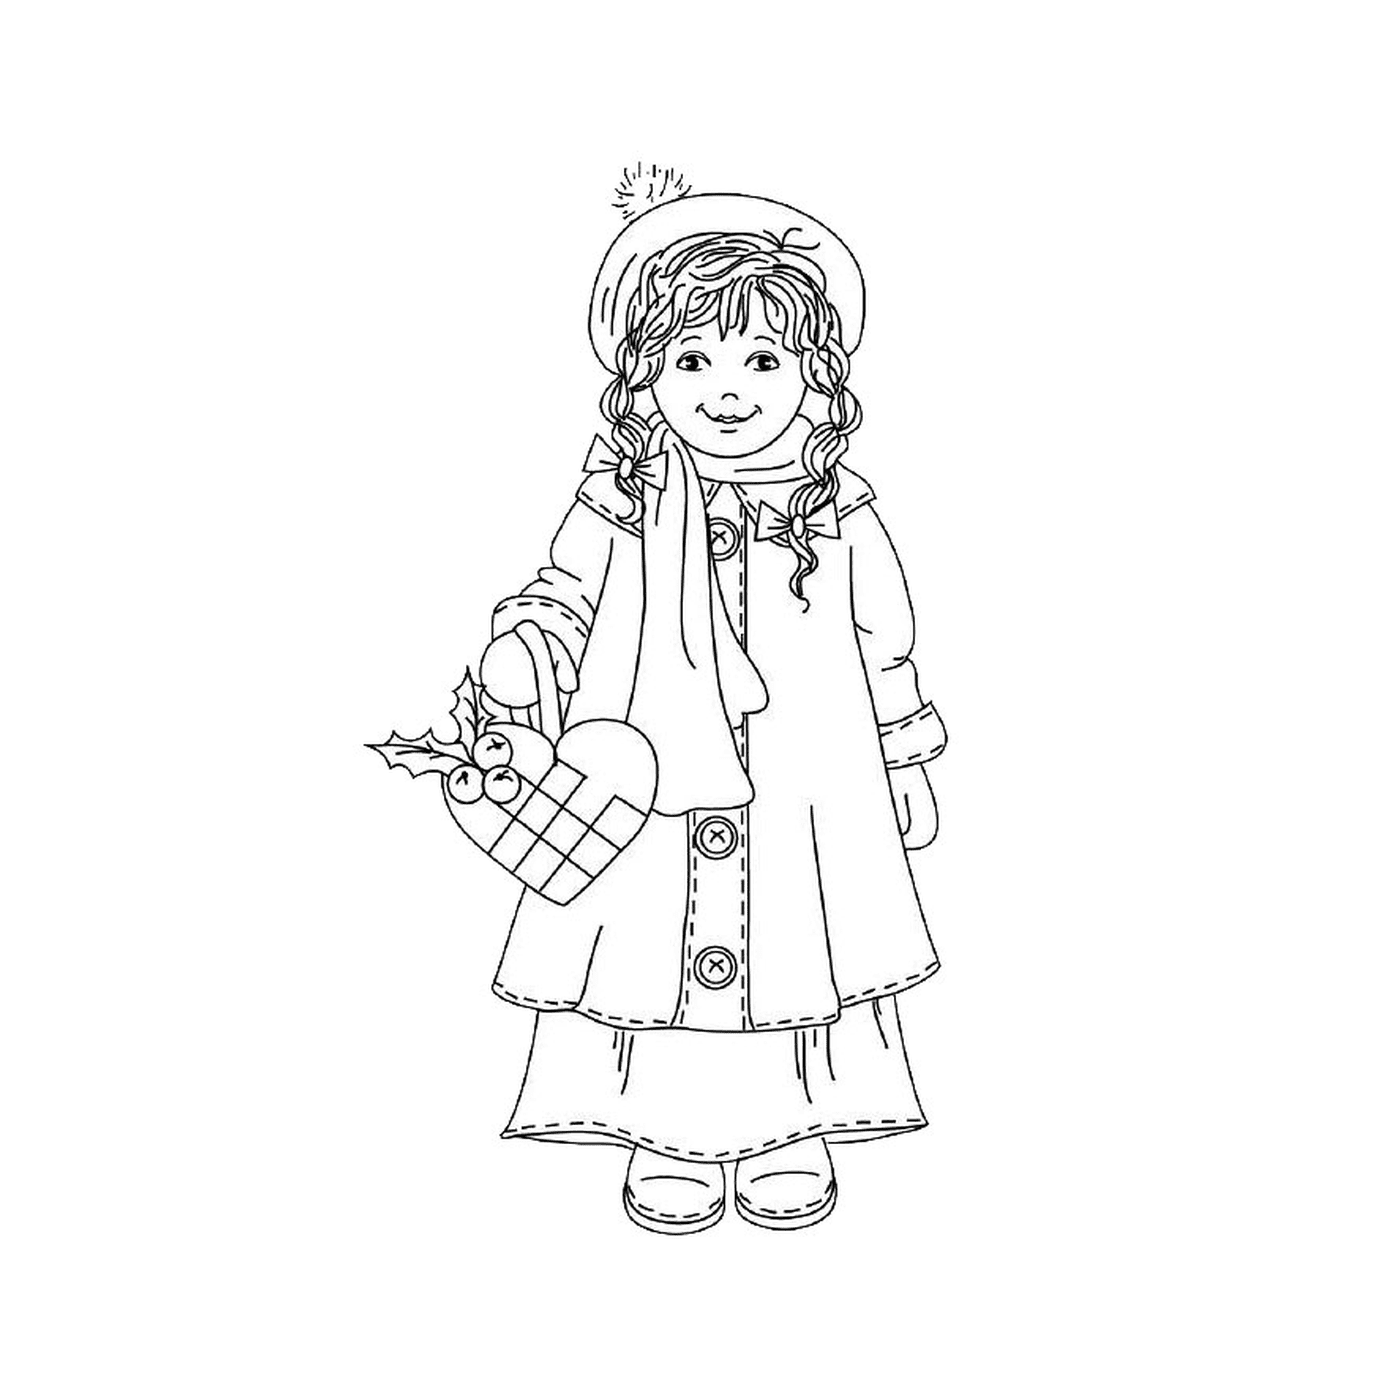  सर्दियों की टोकरी सहित लड़की 